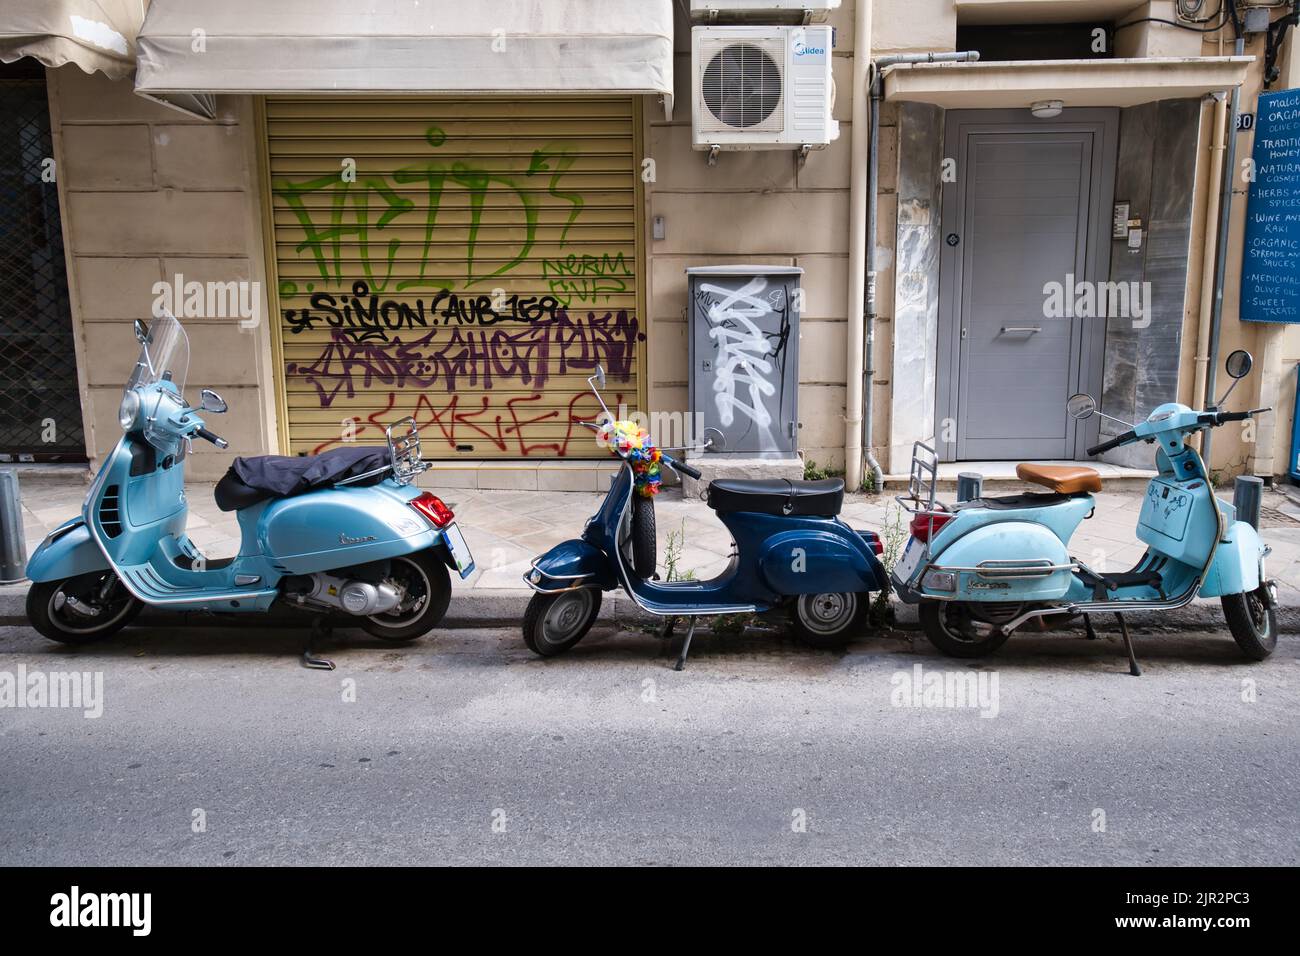 Motos estacionadas en una calle del distrito de Plaka en Atenas Foto de stock